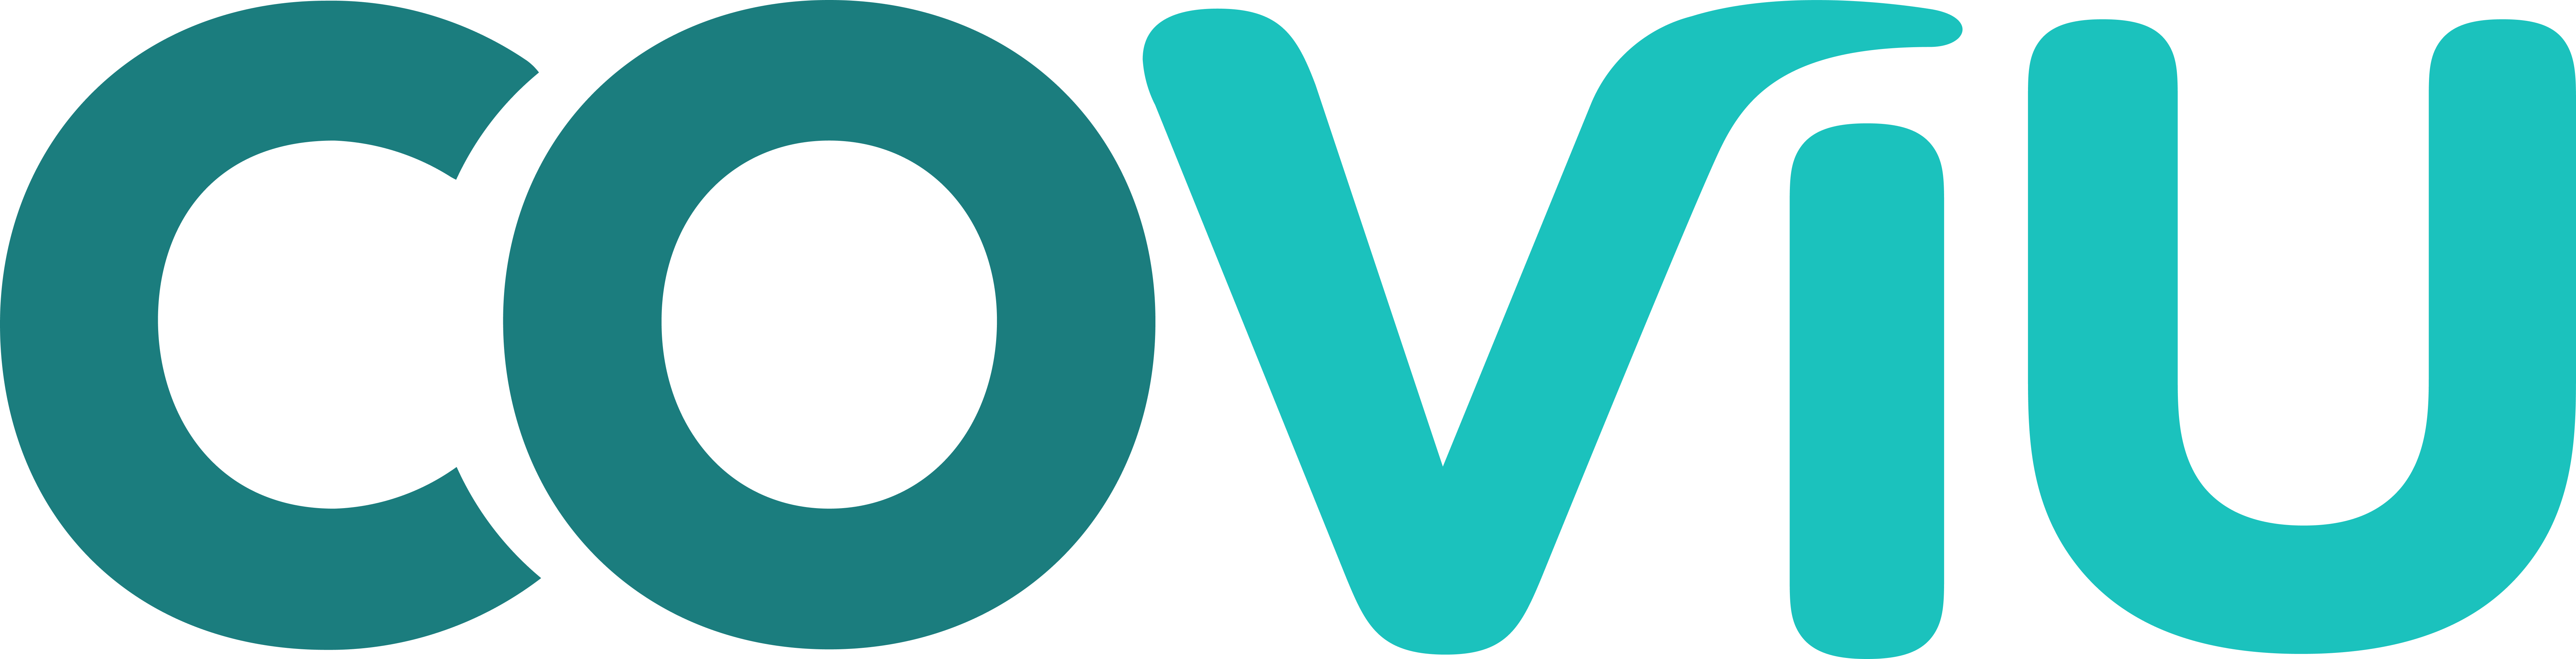 Coviu Logo (1)